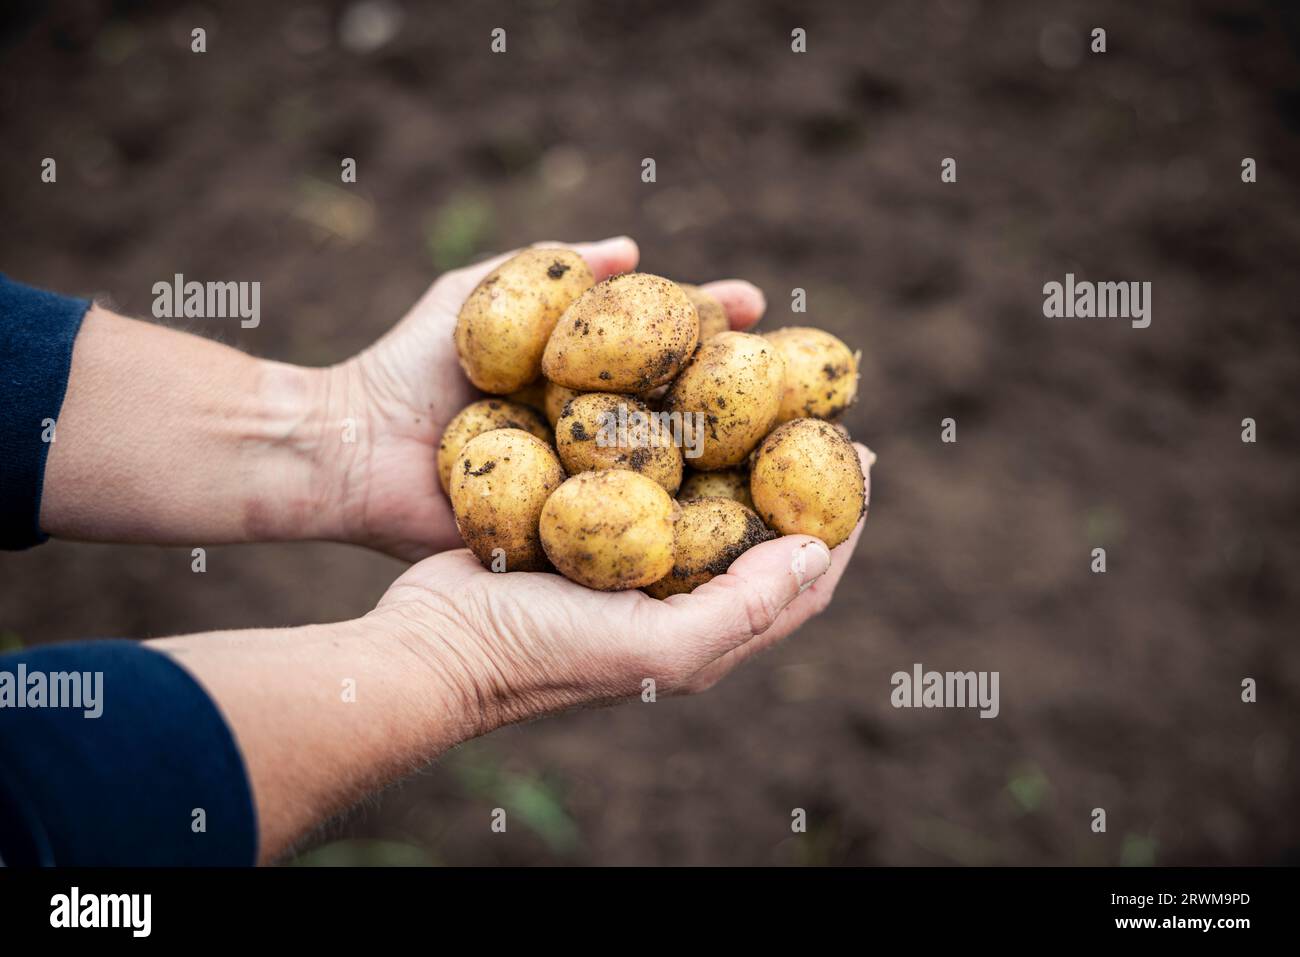 le mani cuocheranno delicatamente una raccolta di patate appena raccolte e terrose. Le patate riposano su terreno sabbioso, vengono raccolte con cura, mettendo in mostra Foto Stock